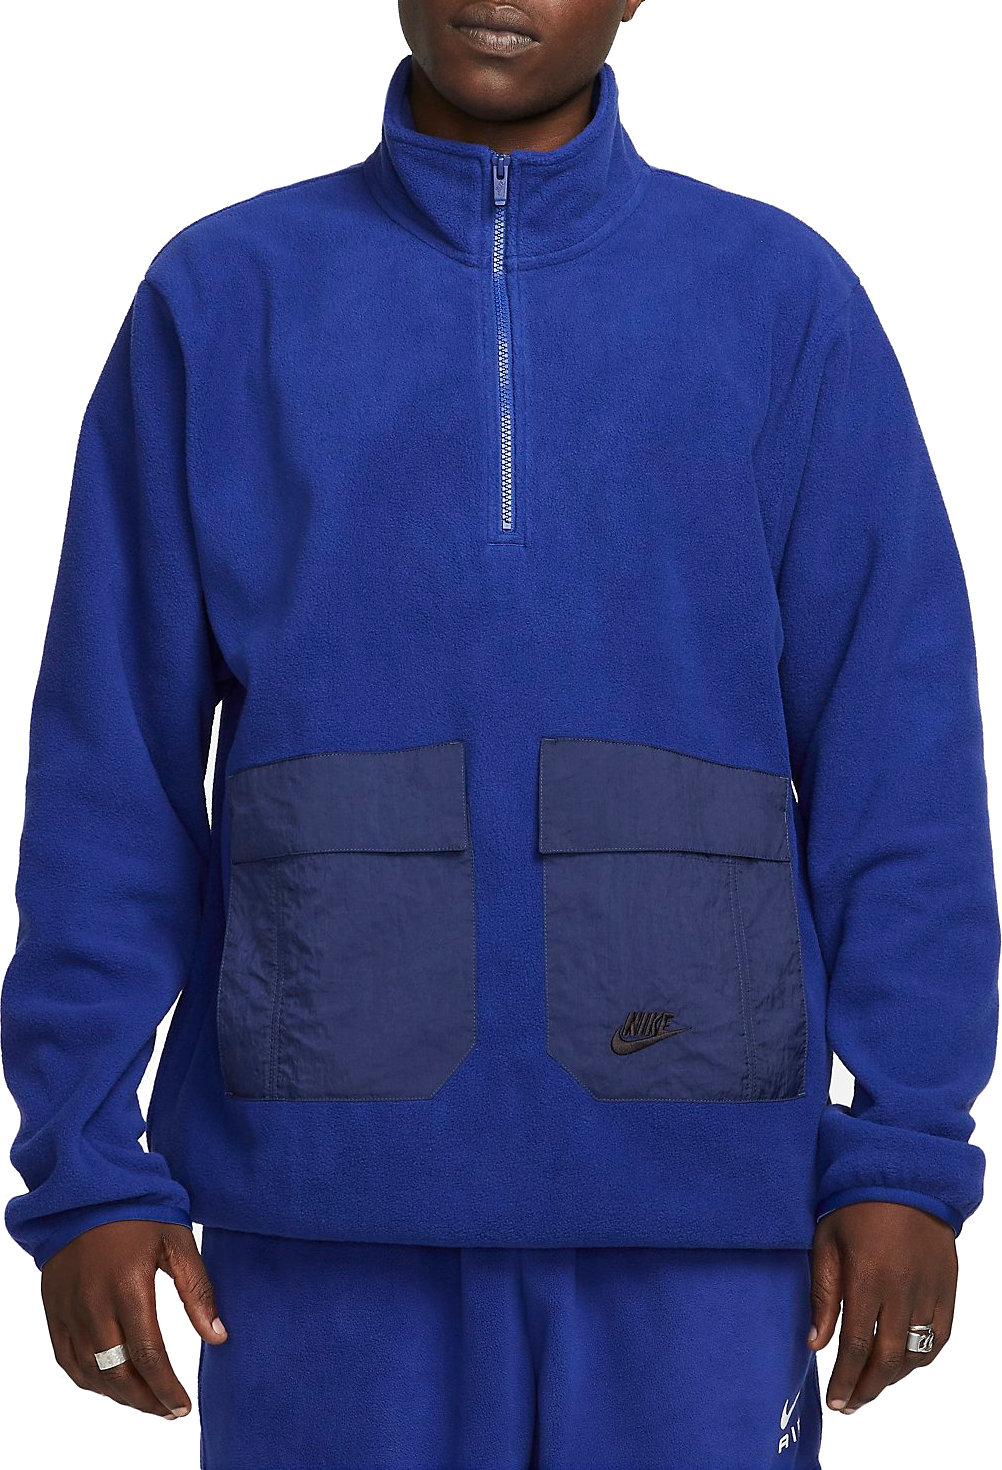 Sweatshirt Nike Men's Sports Utility 1/2-Zip Fleece Top